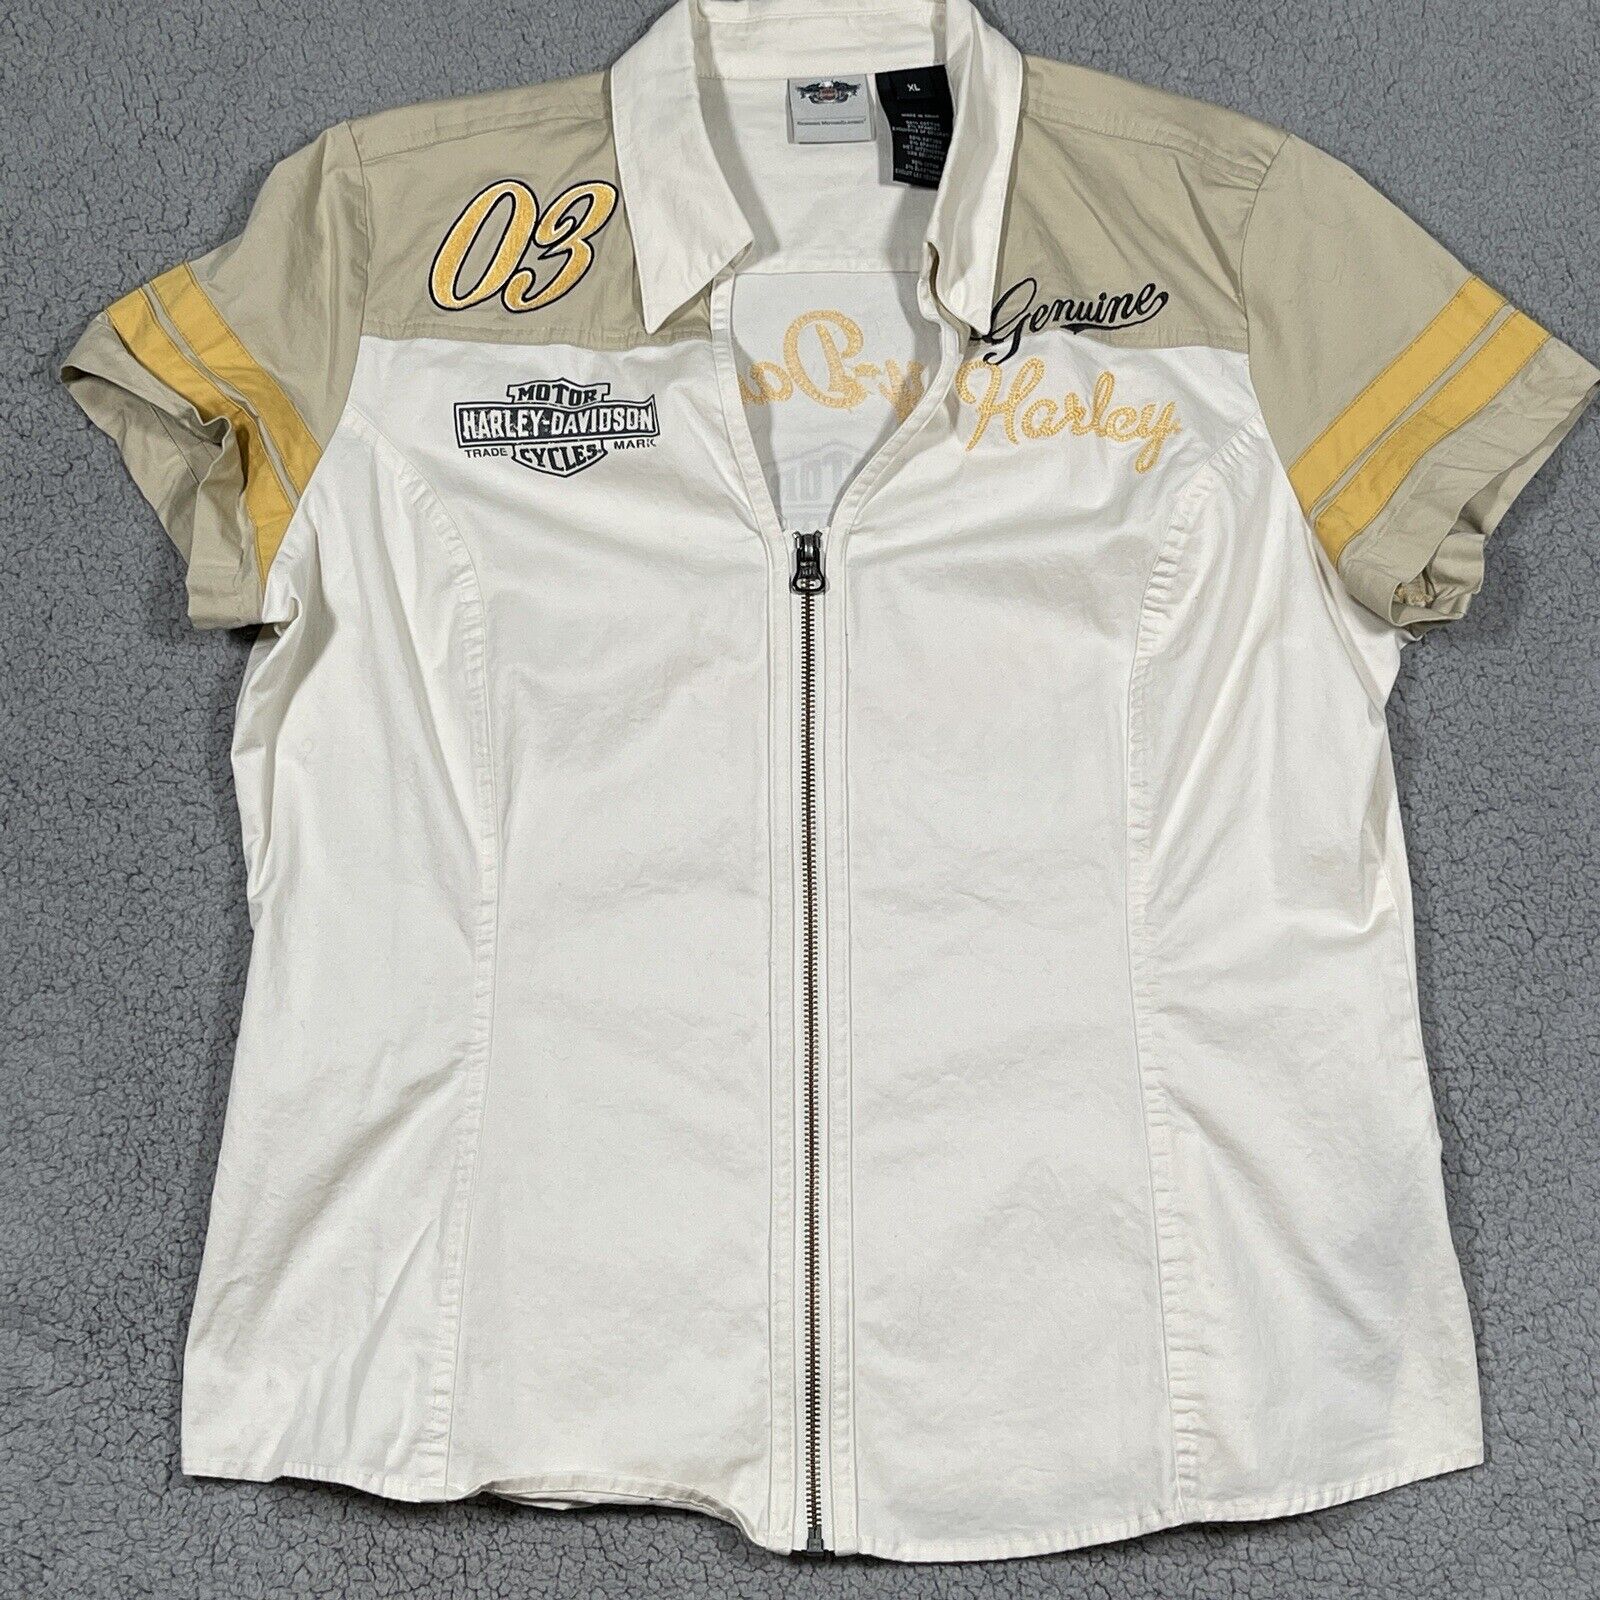 Harley Davidson Zip Up Shirt Women's Xl White Beige Yellow Embroidered Biker